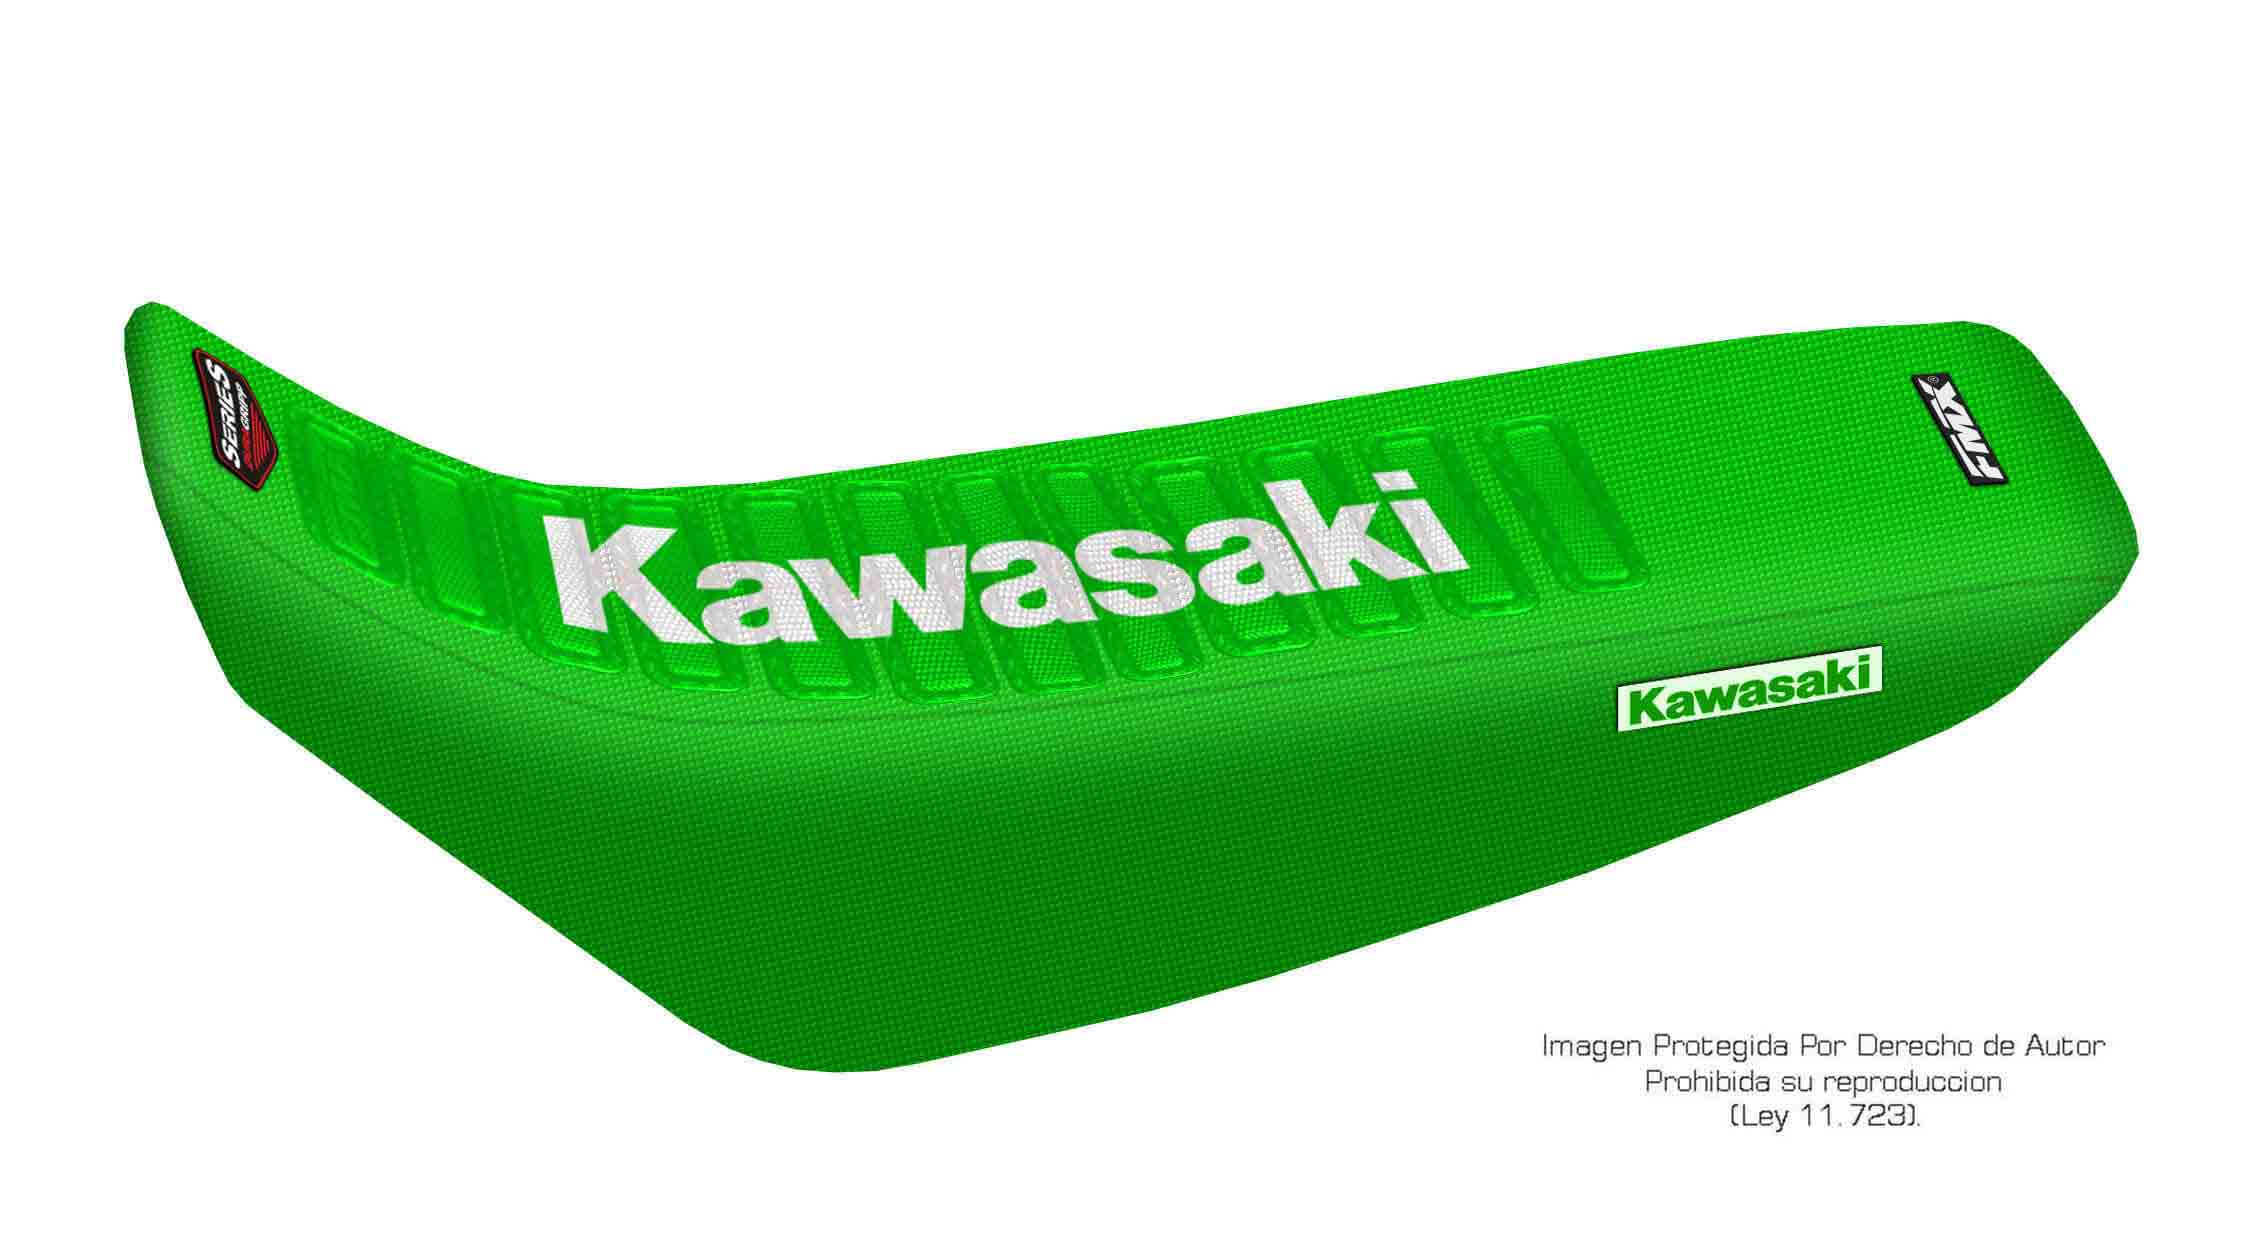 Funda Asiento Kawasaki Kdx 220 - 95/07 Series. Es una obra de arte artesanal fabricada en Argentina, nuestros productos son de la mejor calidad.